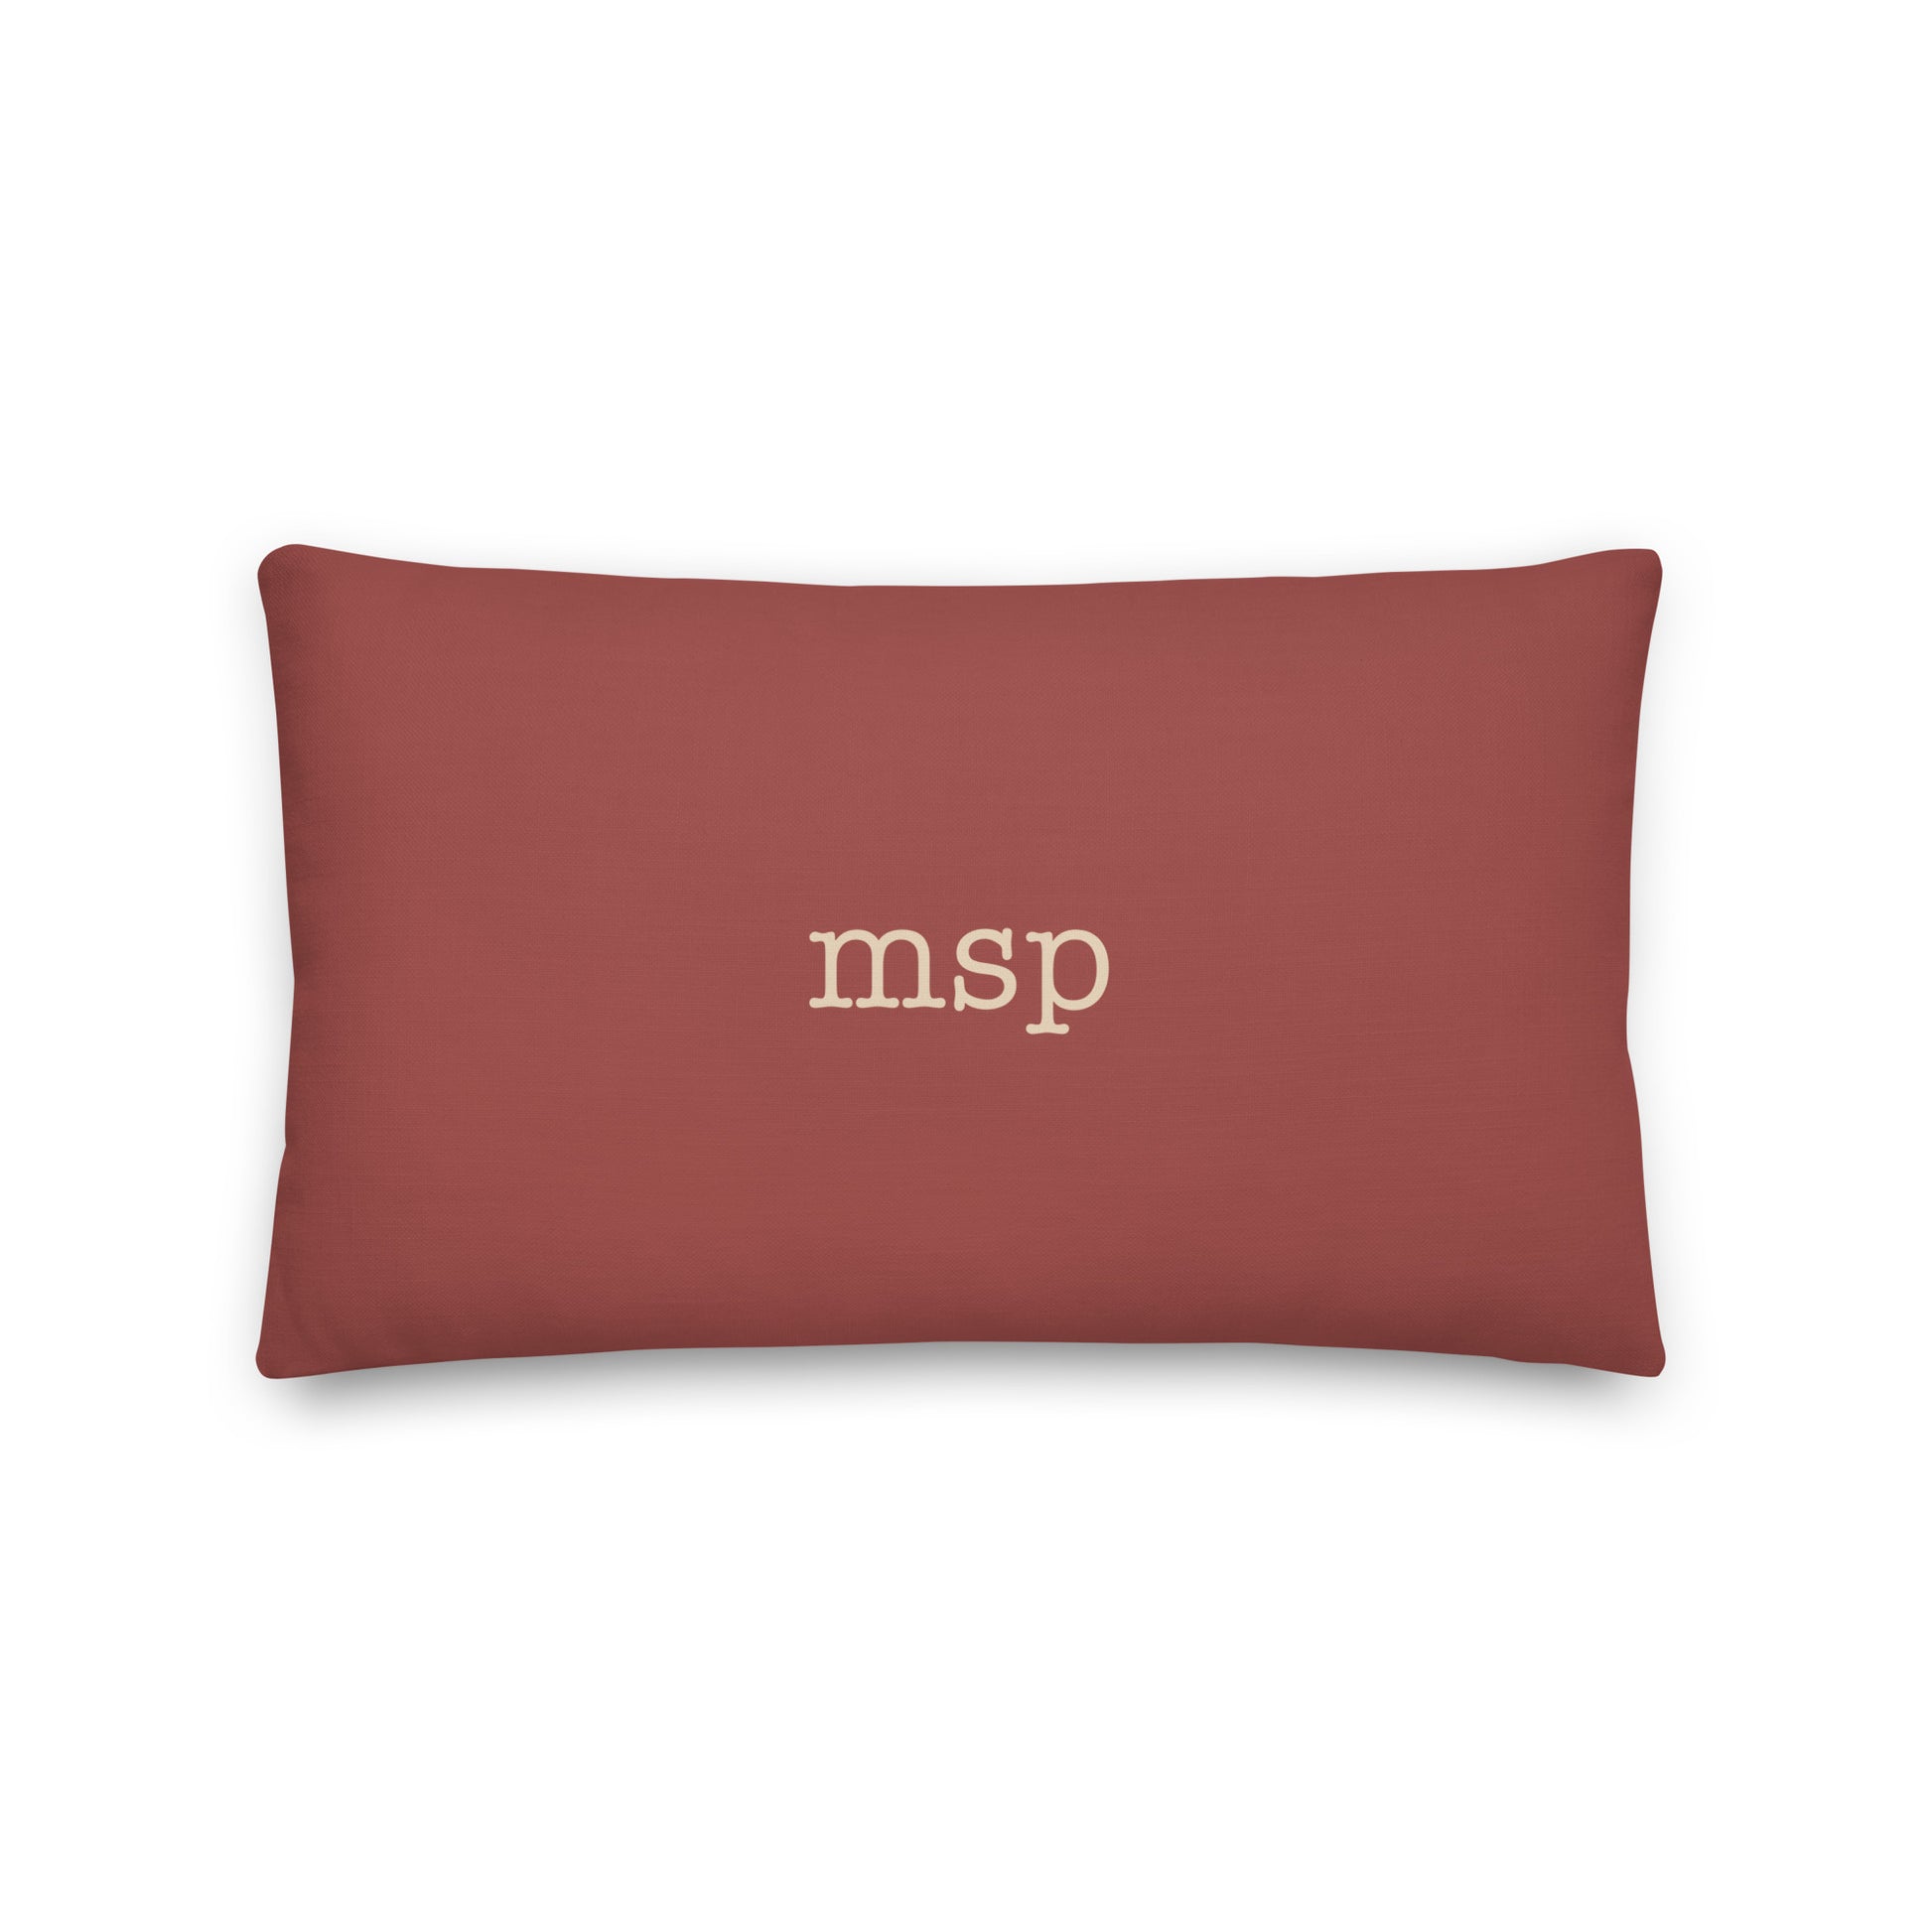 Typewriter Pillow - Terra Cotta • MSP Minneapolis • YHM Designs - Image 02